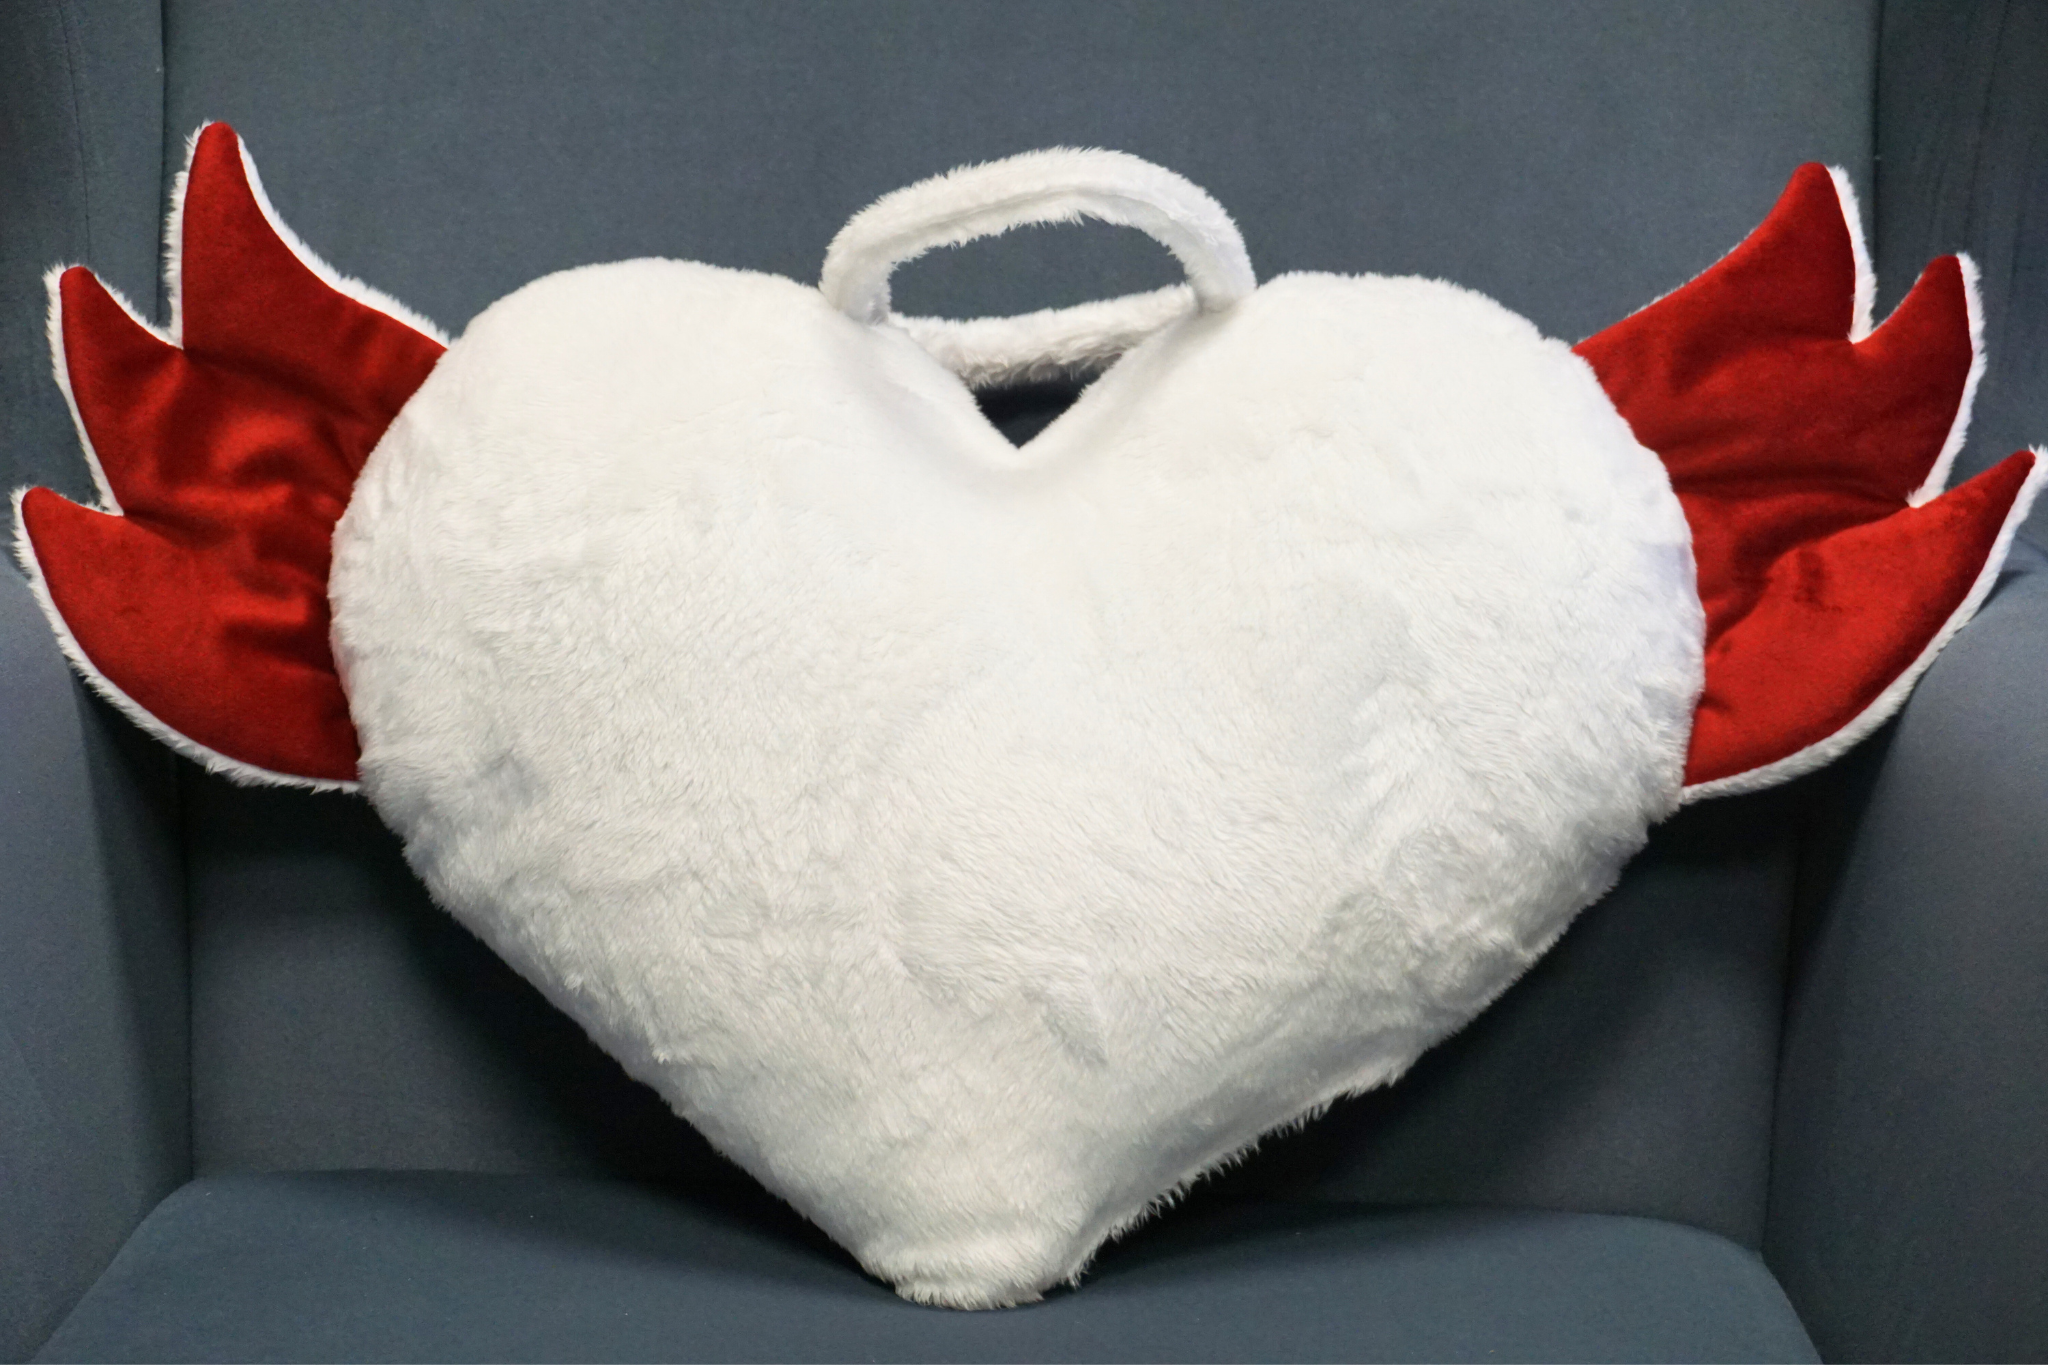 Poduszki Dekoracyjne Walentynkowe Serce: Anioł i Diabeł – Dekoracyjny Komplet w Odcieniach Miłości, Idealna na Prezent, Rozmiar 45x32 cm